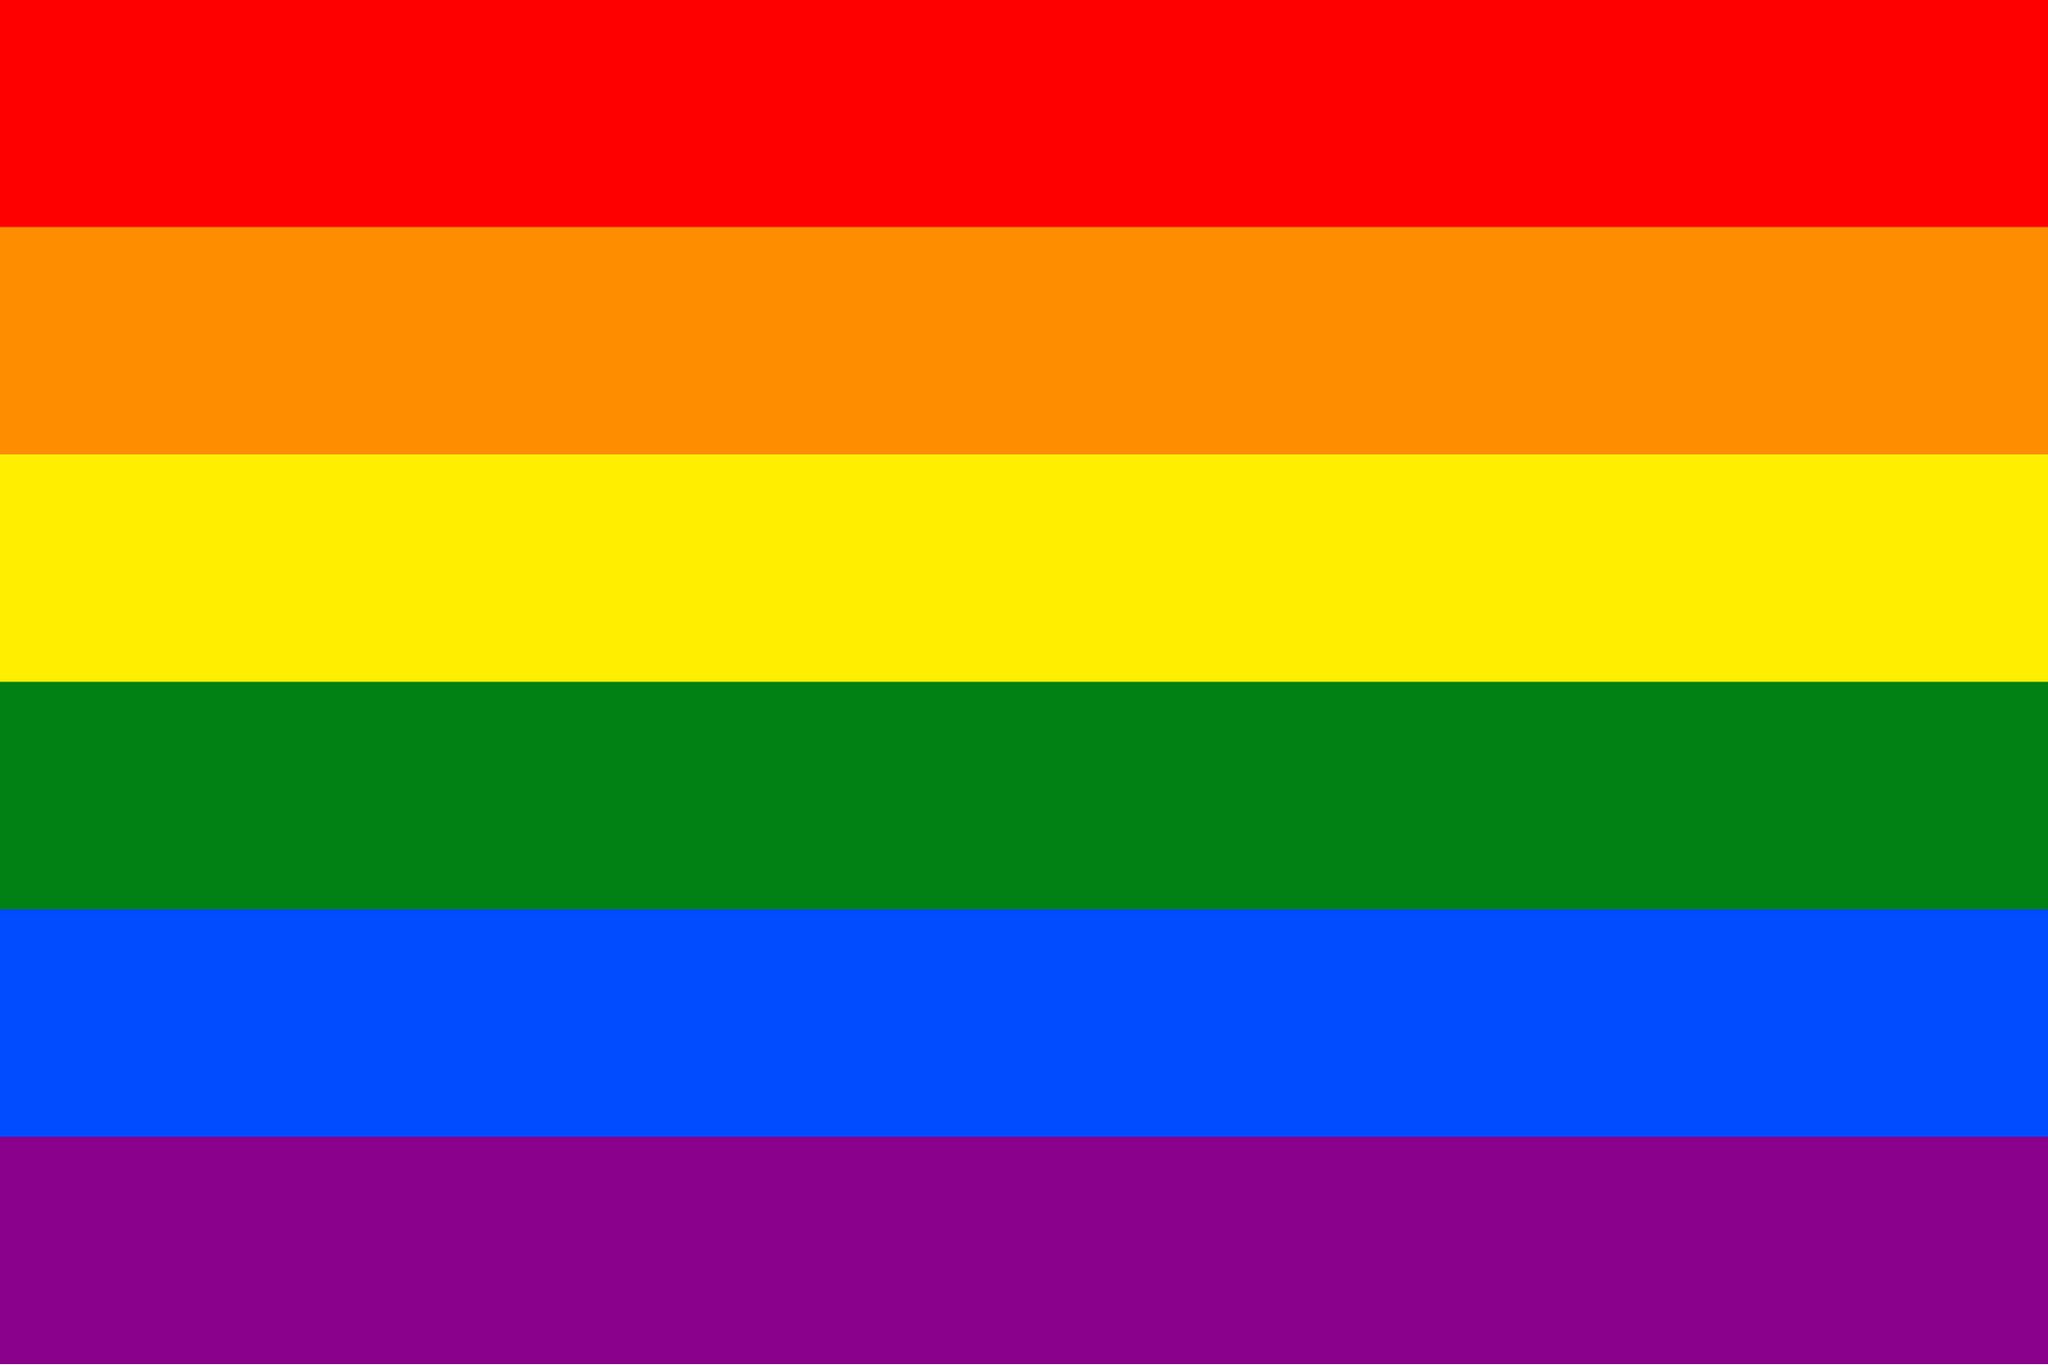 Gay Pride Flag Colors In Order